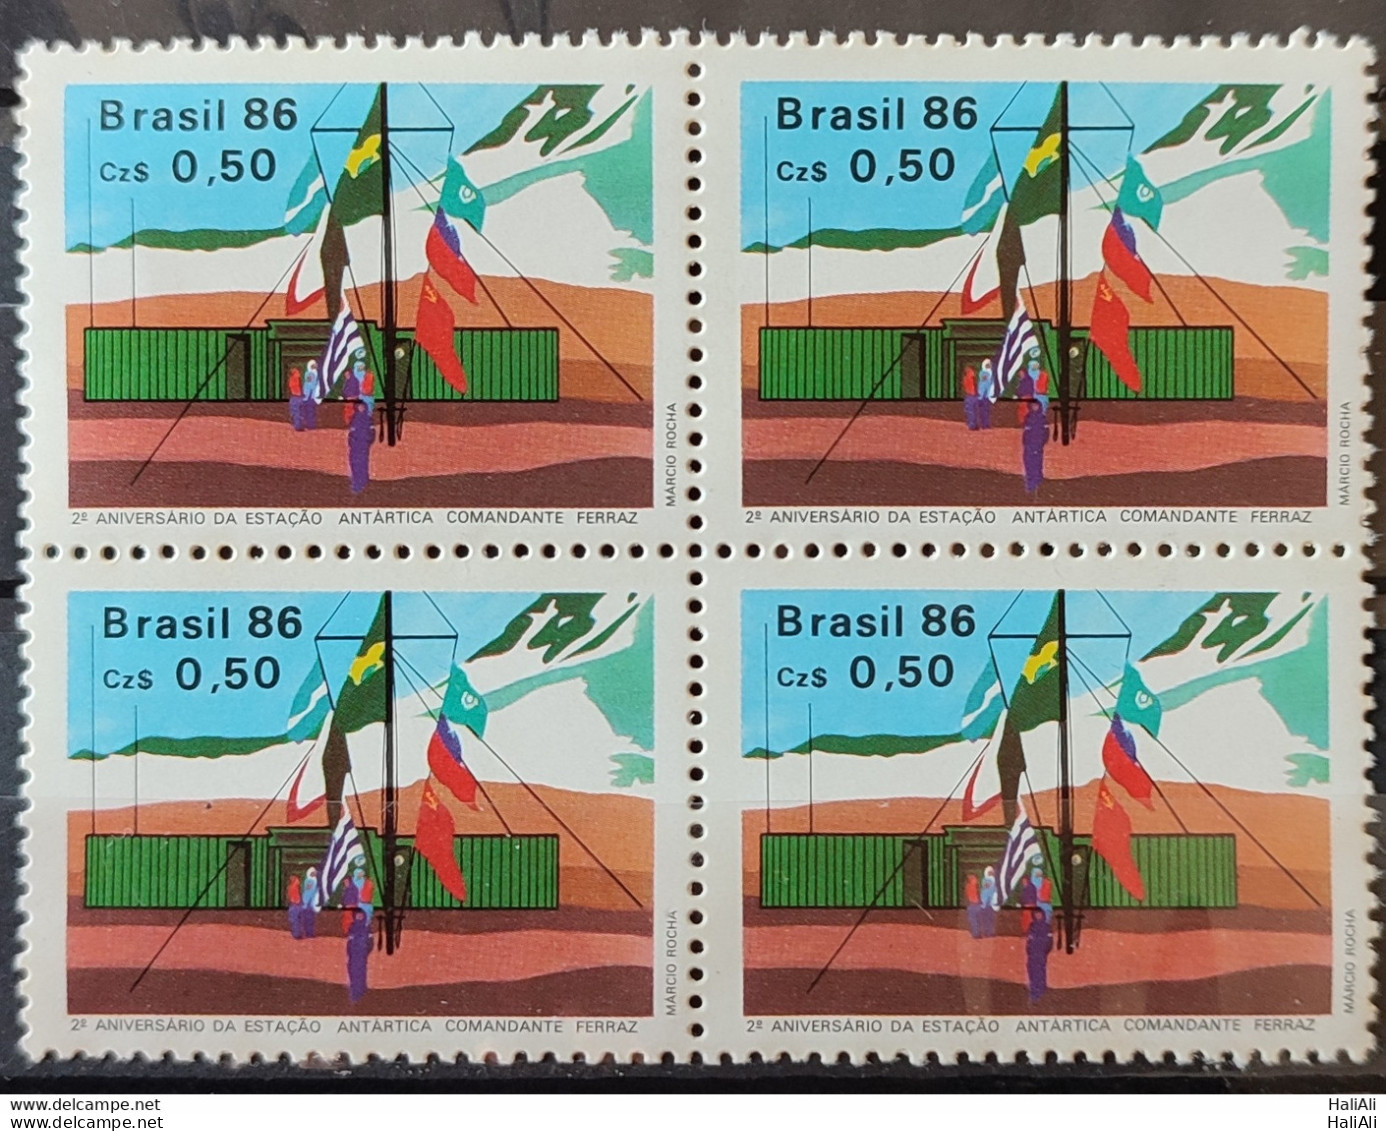 C 1508 Brazil Stamp Antarctic Station Commander Ferraz Flag 1986 Block Of 4 2.jpg - Ongebruikt